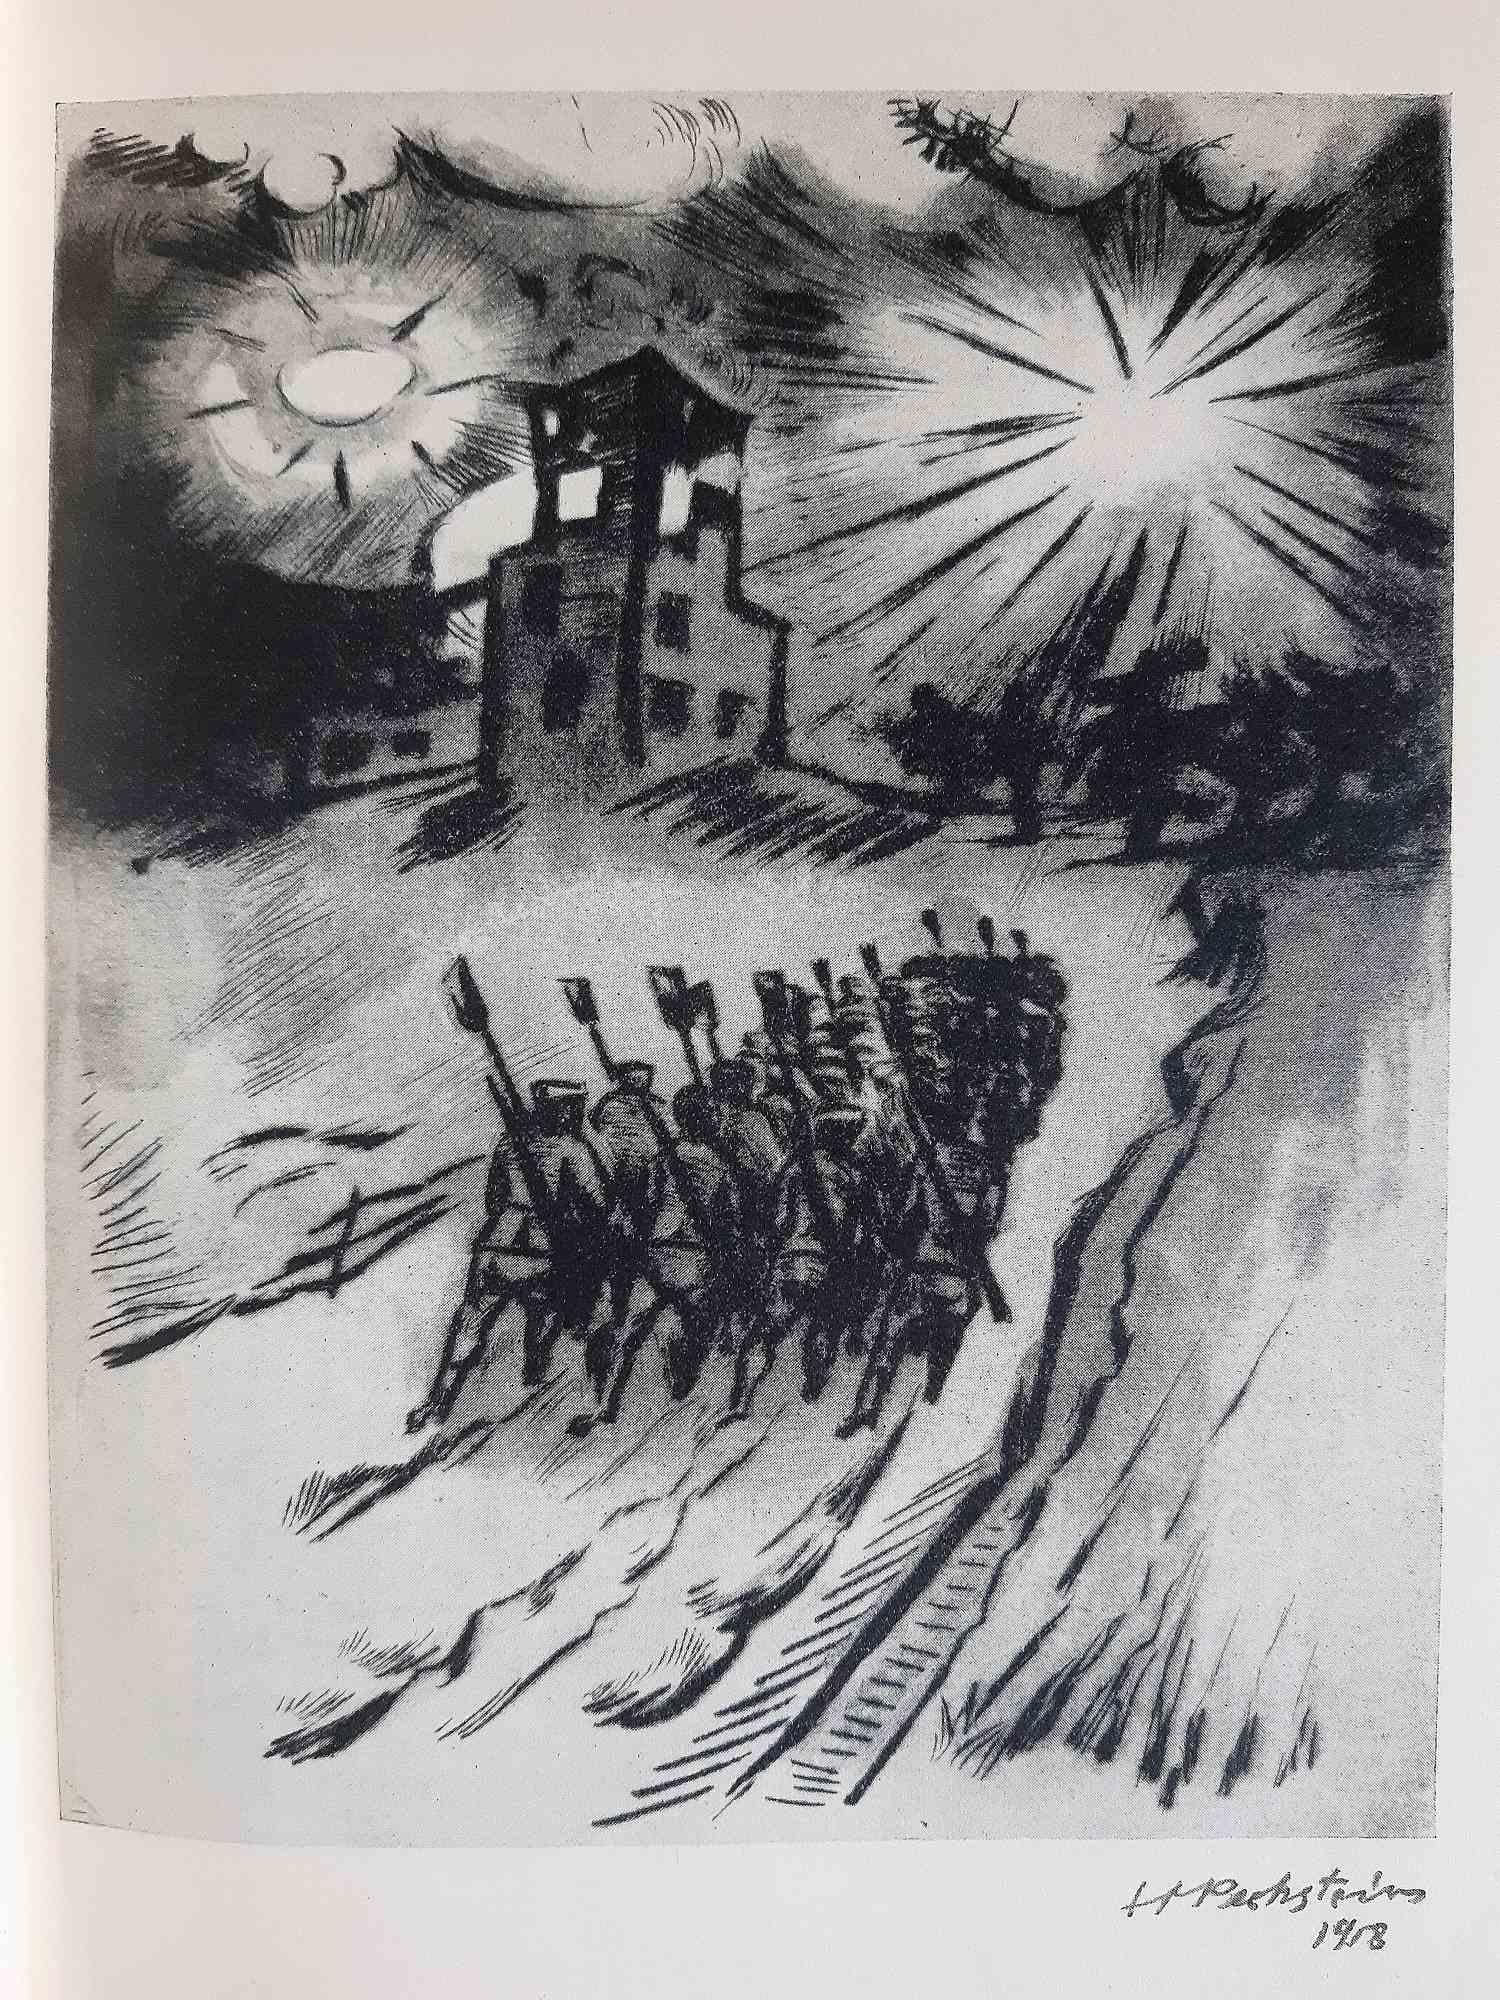 Die Grosse Befehl - Illustrated Book by Max Pechstein - 1933 - Expressionist Print by Hermann Max Pechstein